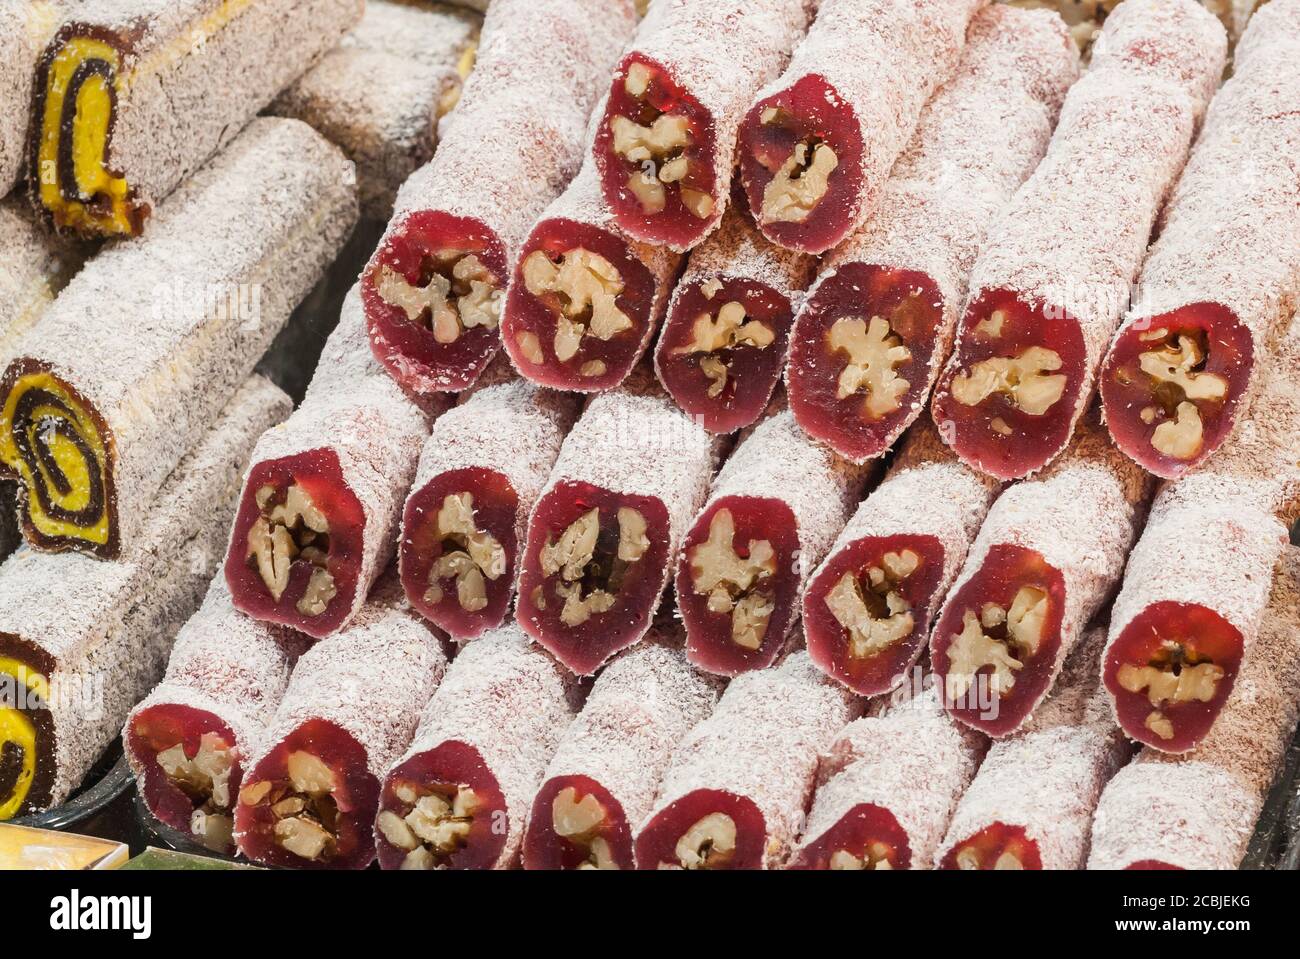 Bunte türkische Delight (Lokum) Brötchen Sortiment zum Verkauf auf einem Markt in Istanbul. Diese sind eine Spezialität Lebensmittel in der Türkei. Stockfoto